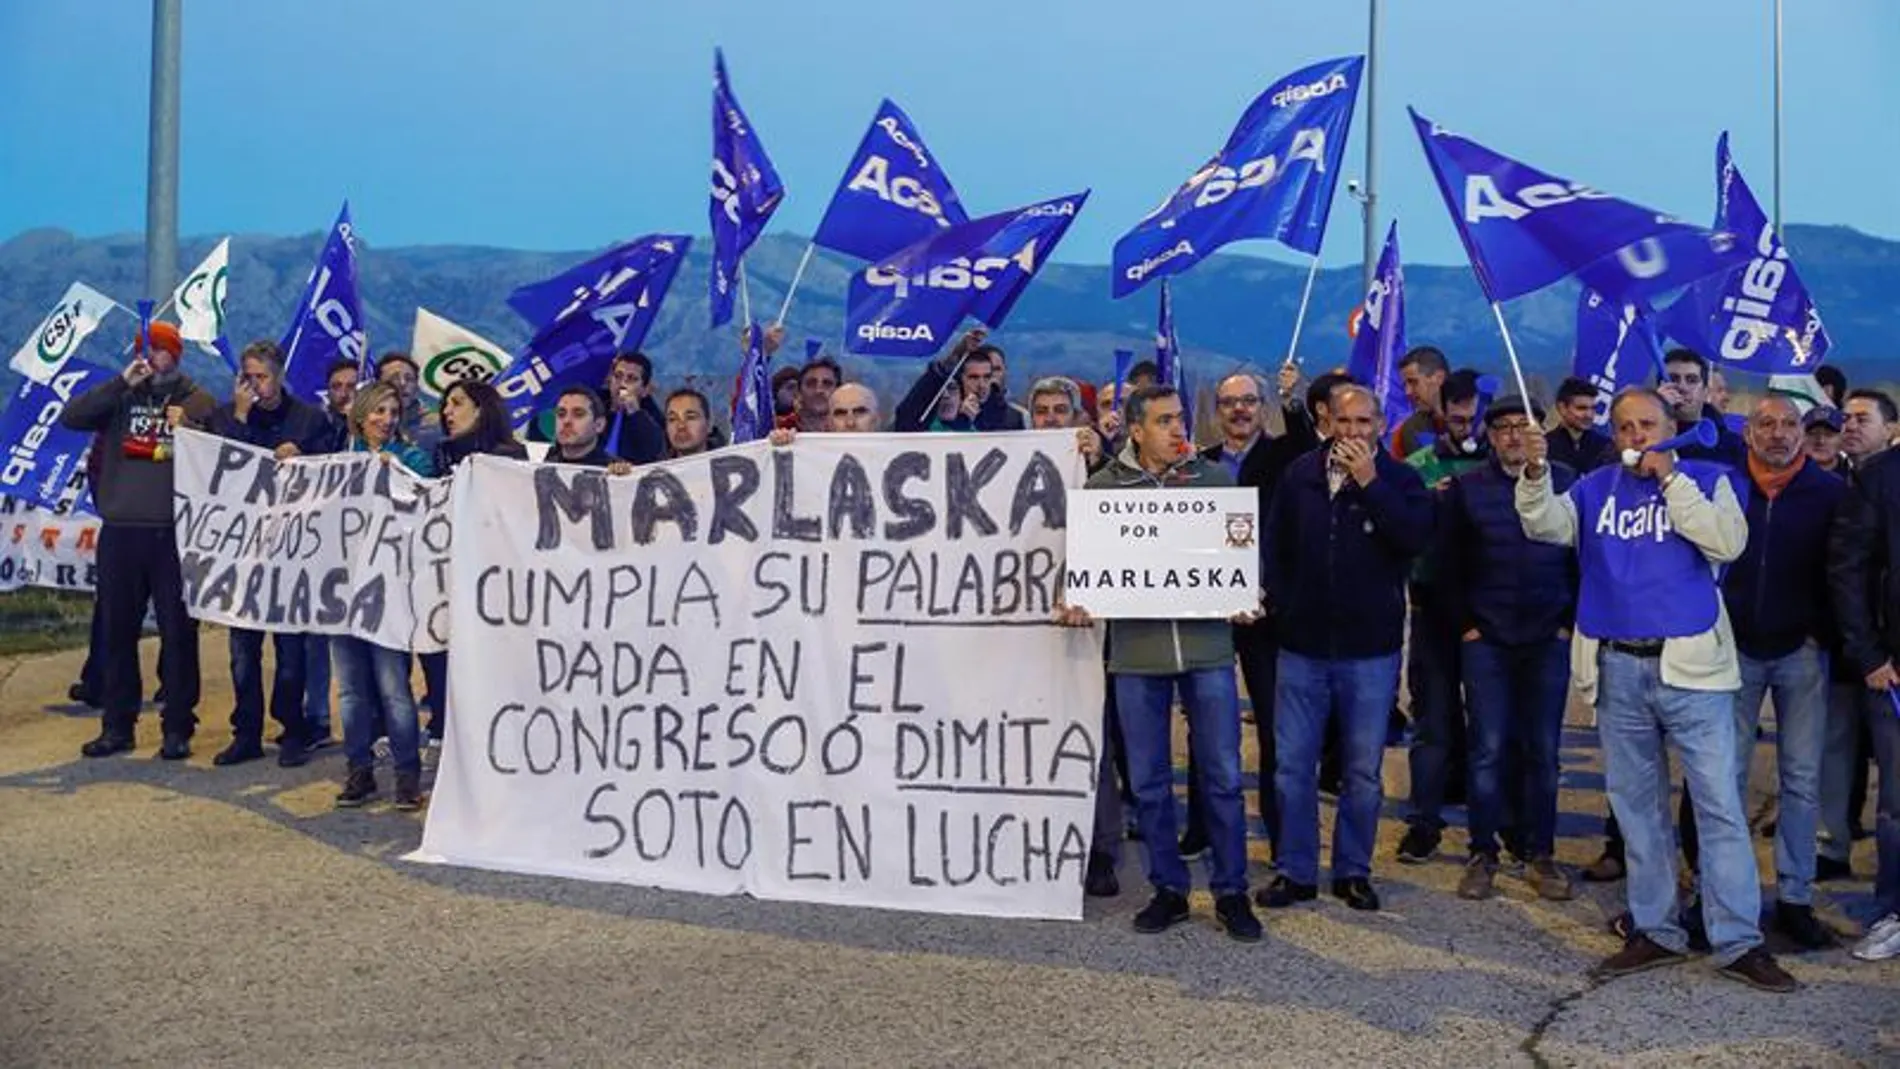 Los sindicatos representativos en Prisiones durante el piquete organizado en Soto del Real